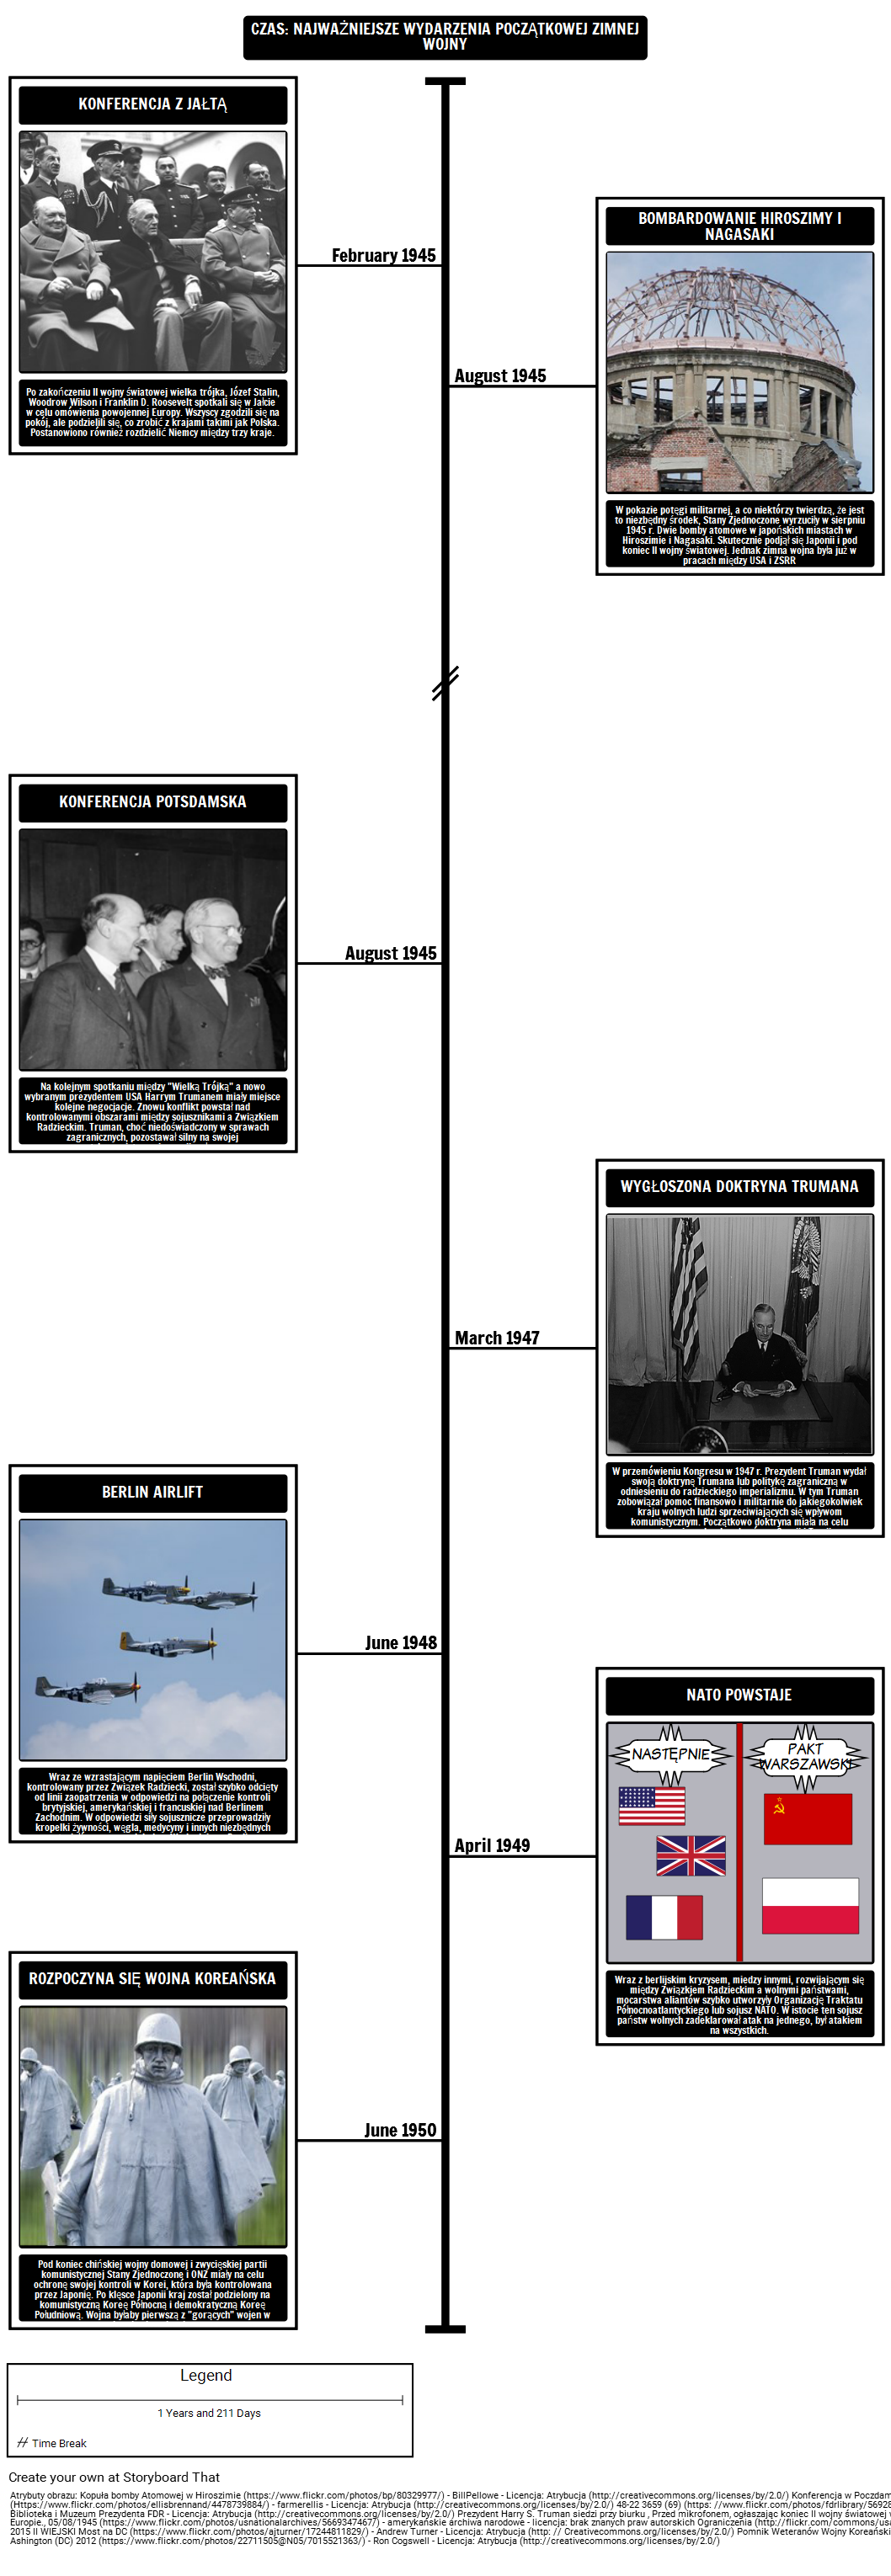 Timeline - Główne Wydarzenia Początkowej Zimnej Wojny